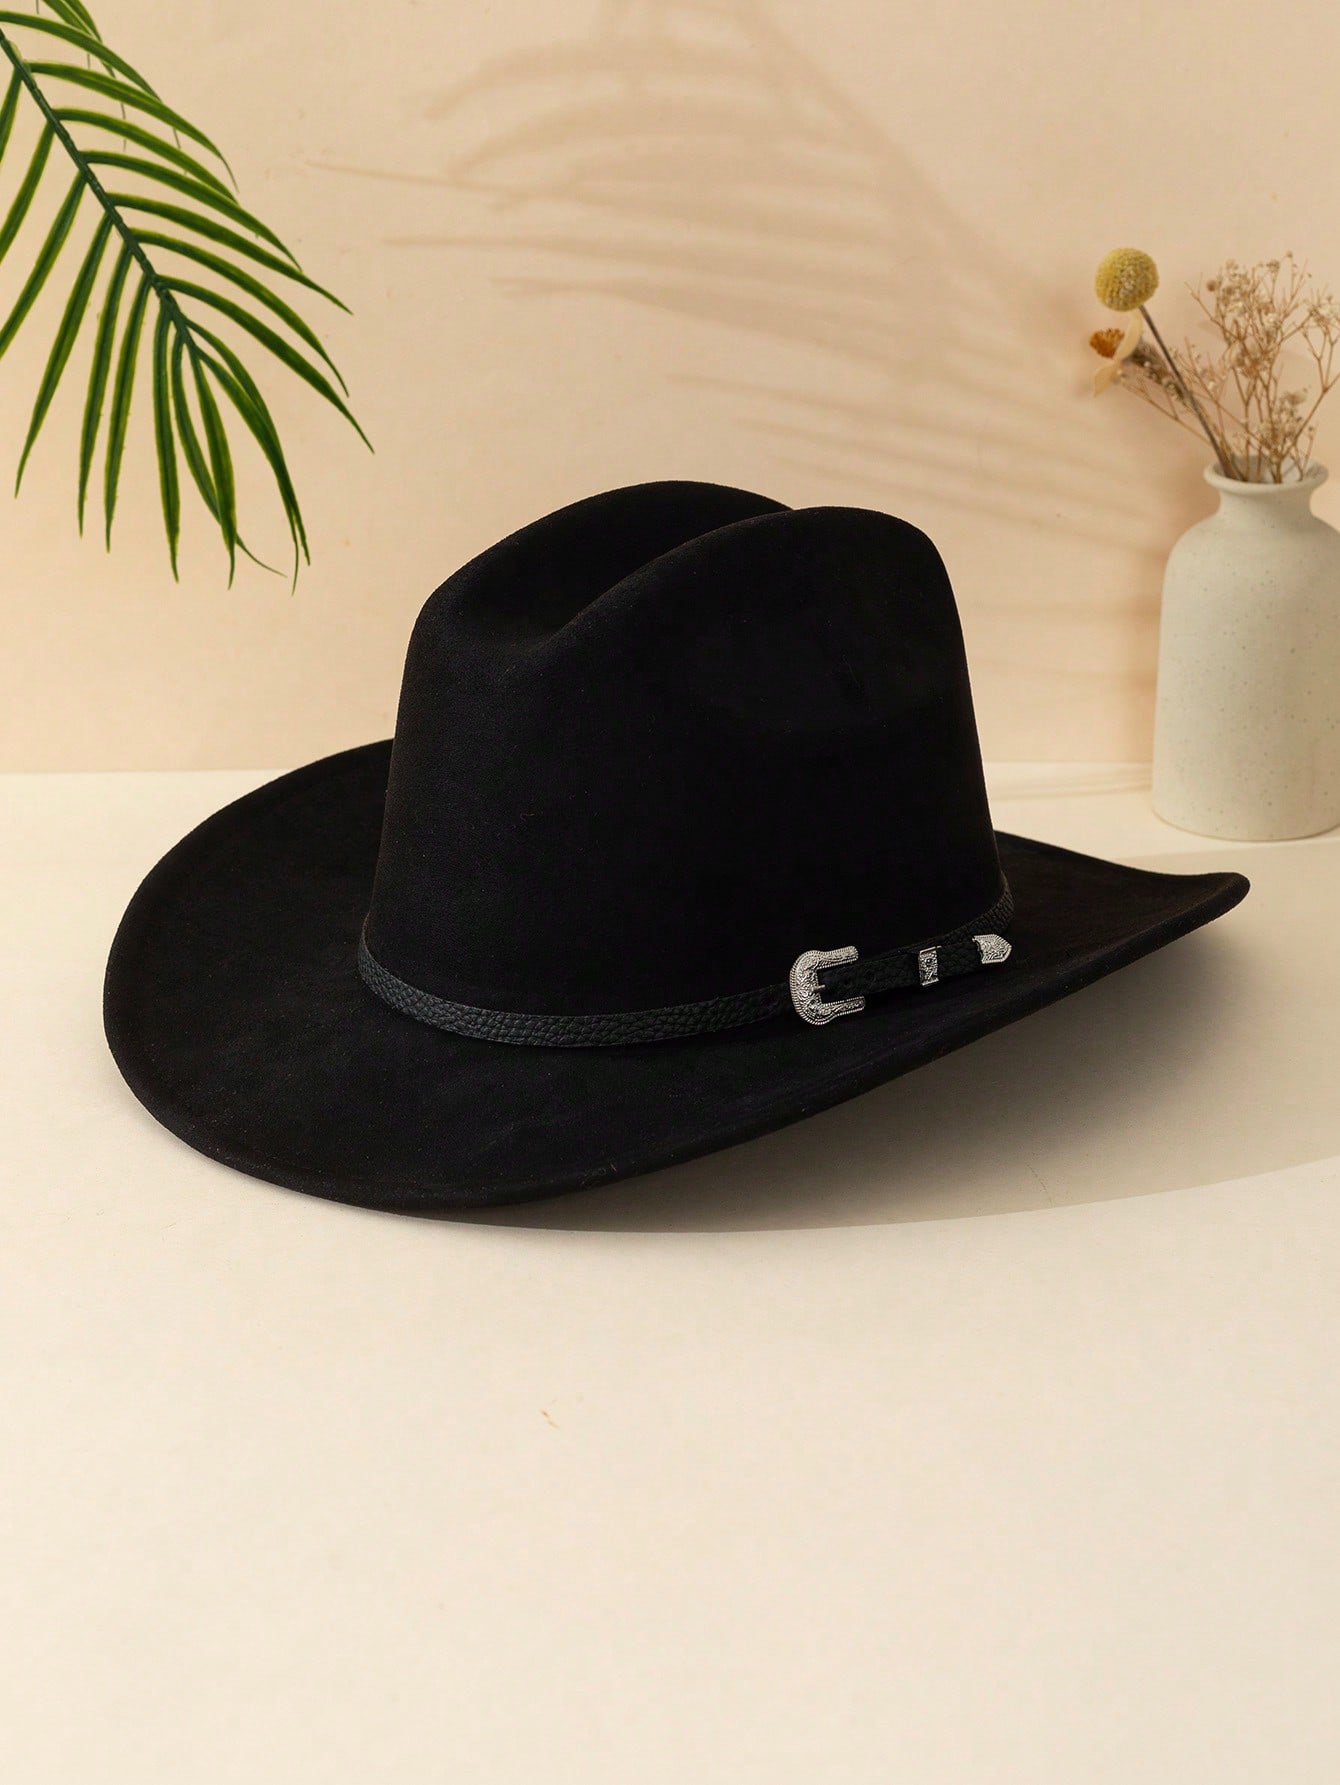 1 шт. черная замшевая ковбойская шляпа унисекс с железной пряжкой и закругленными полями для осени и зимы, черный